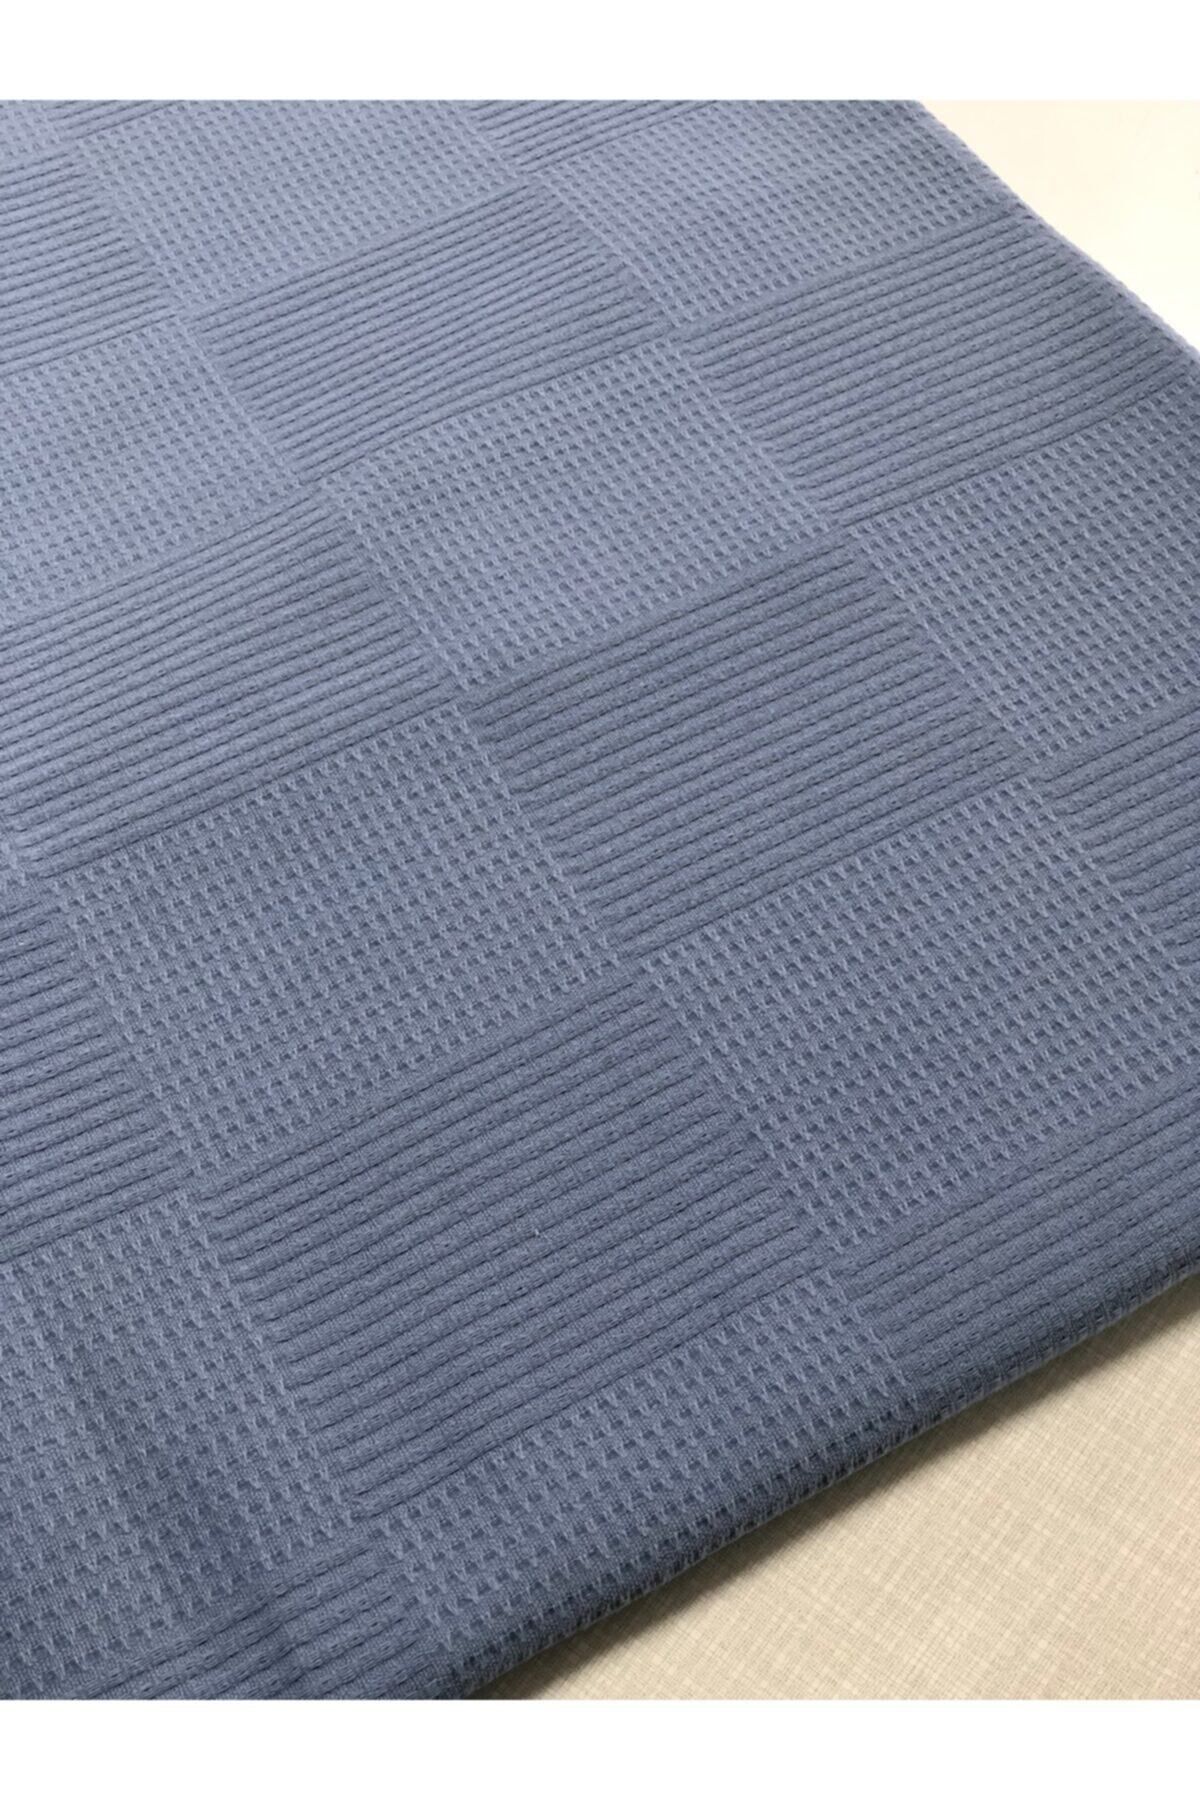 Sefaoğlu tekstil King Size Pike, Renk Açık Indigo Mavi, %100 Pamuk